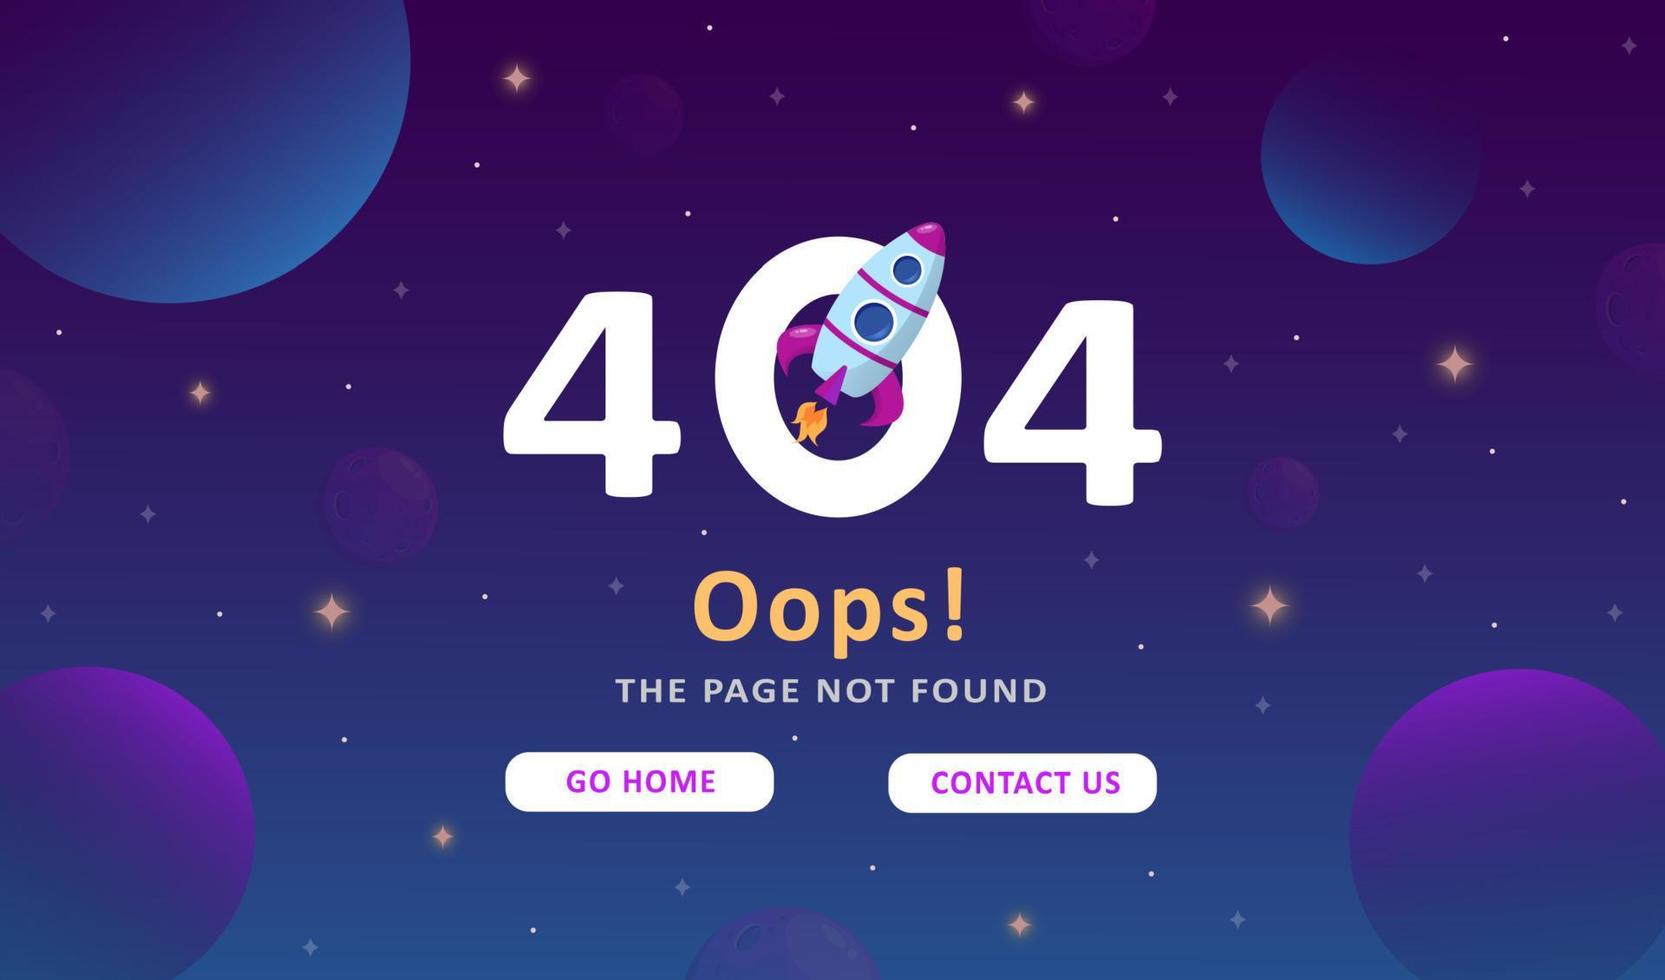 Fehler 404 - Seite nicht gefunden. moderner hintergrund der weltraumforschung. süße Verlaufsvorlage mit Planeten und Sternen für Poster, Banner oder Website-Seite. vektor